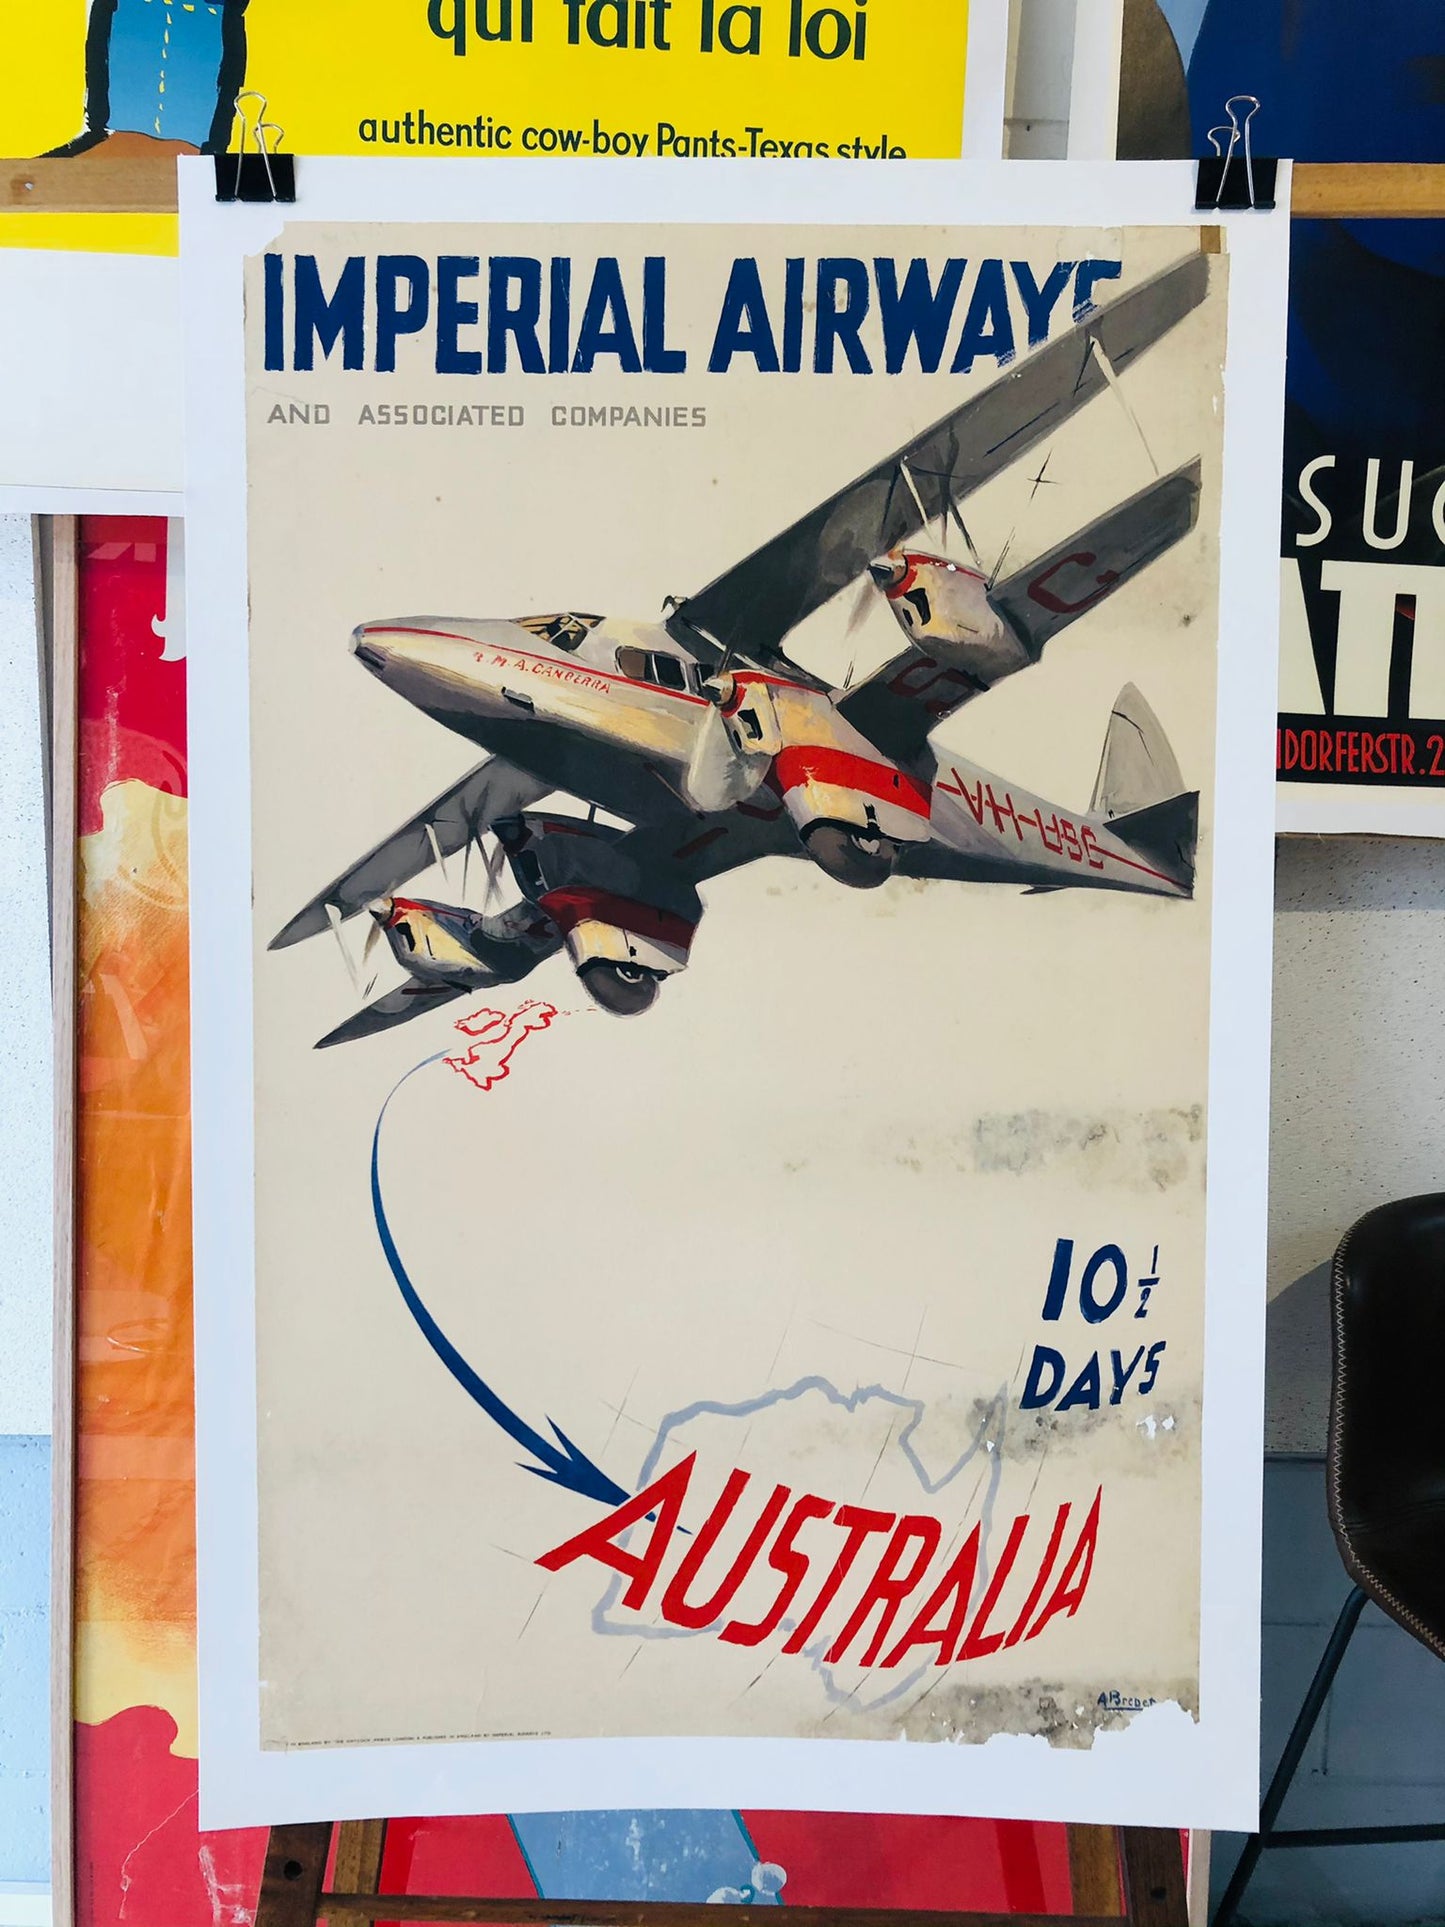 Imperial airways